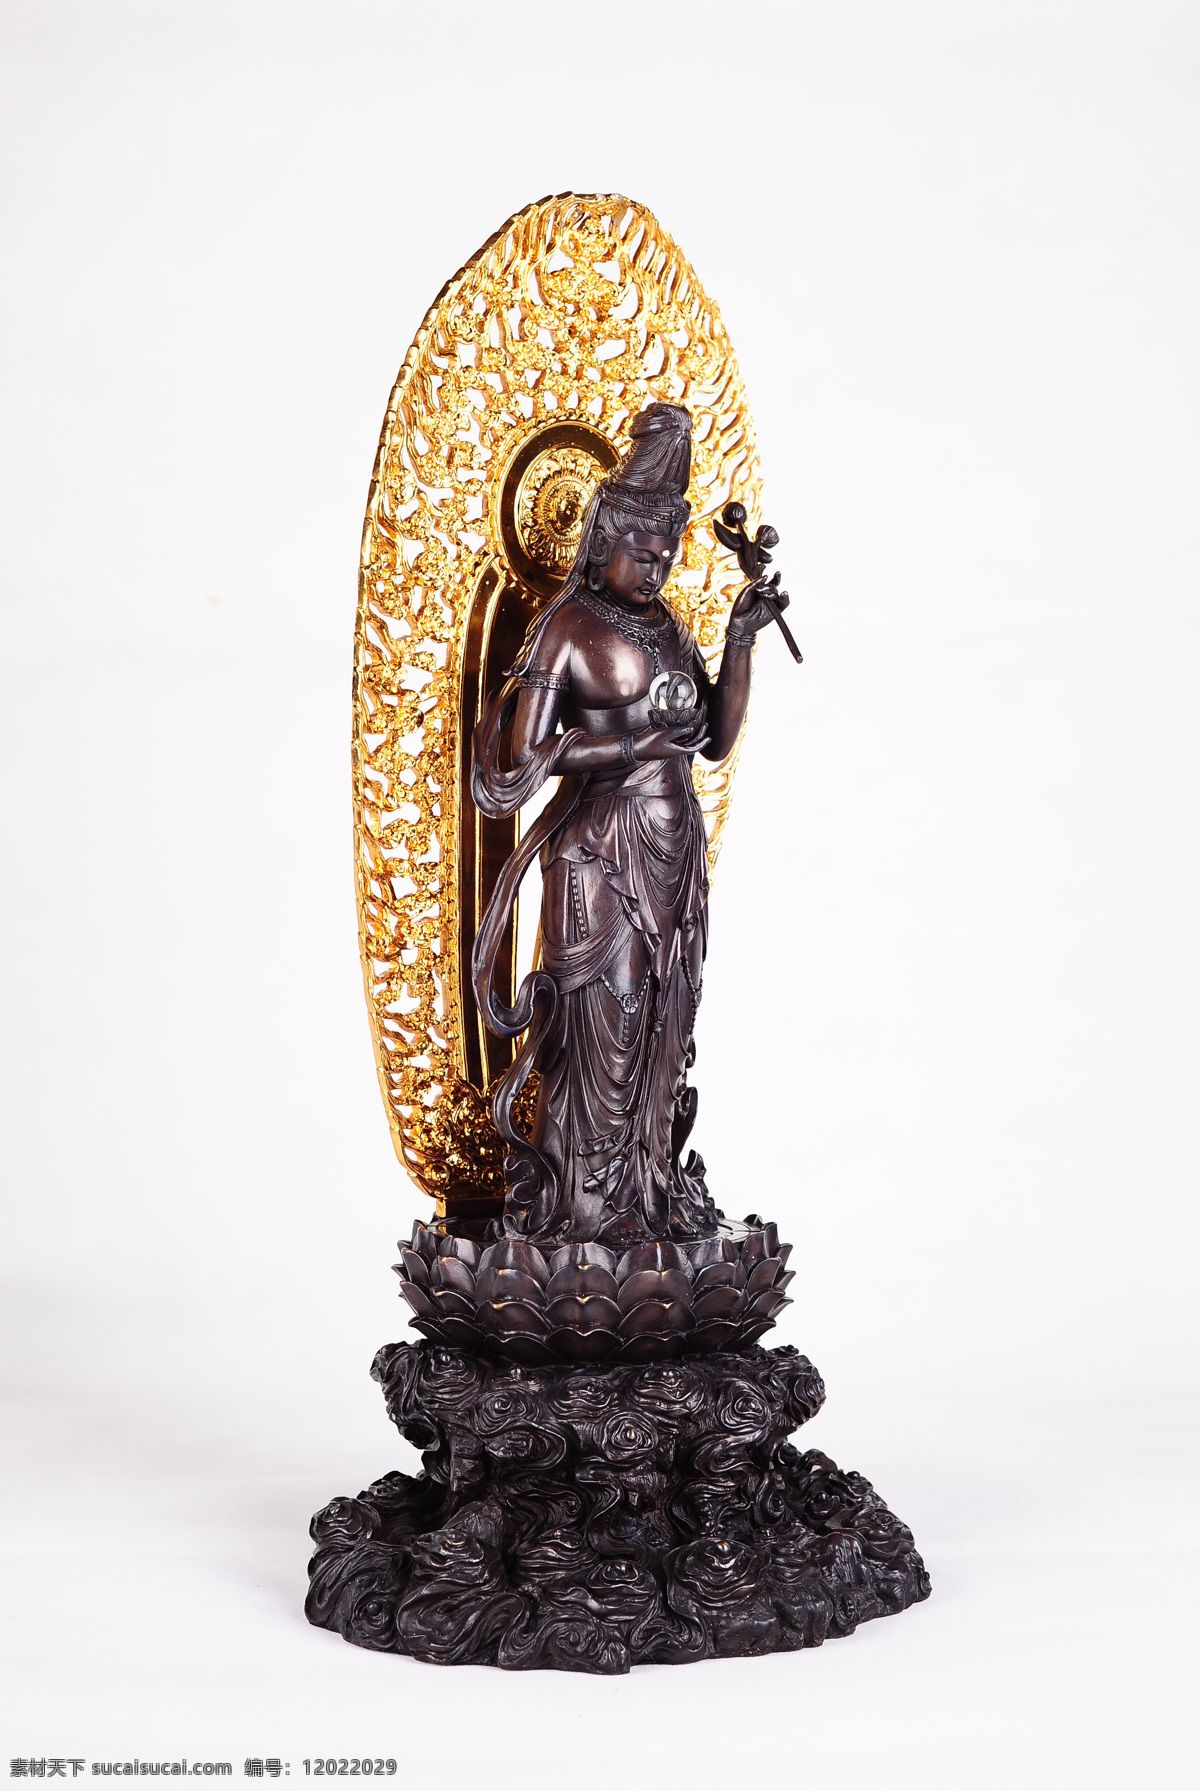 佛像摄影 佛教 文化艺术 雕刻艺术 佛像艺术 传统文化